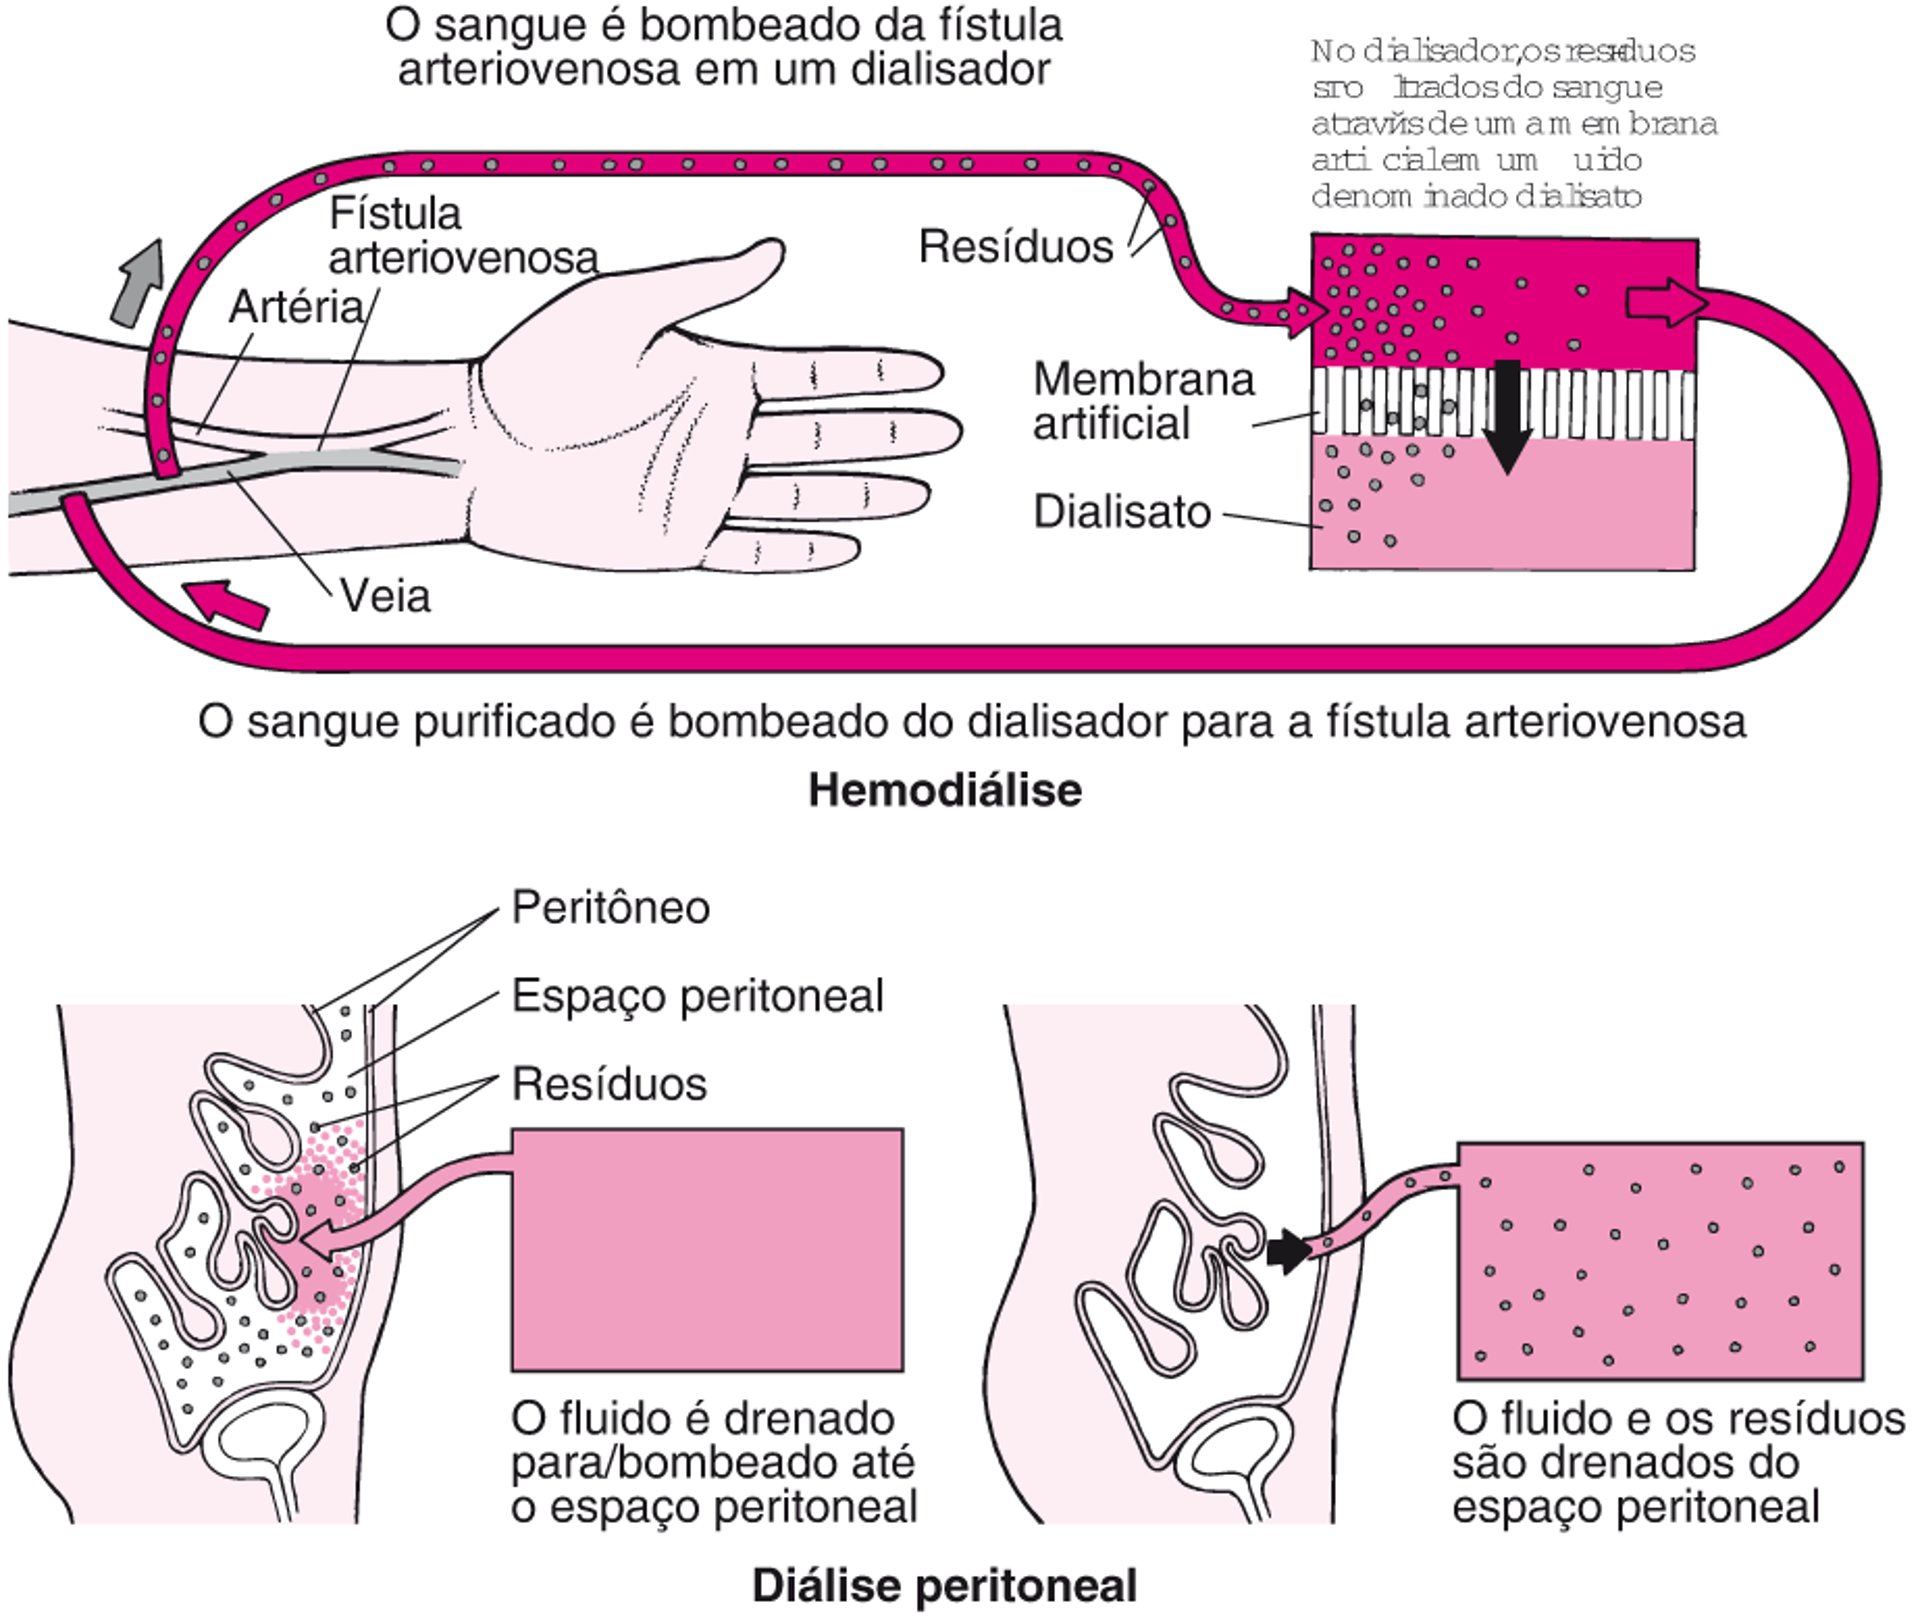 Comparação da hemodiálise com a diálise peritoneal